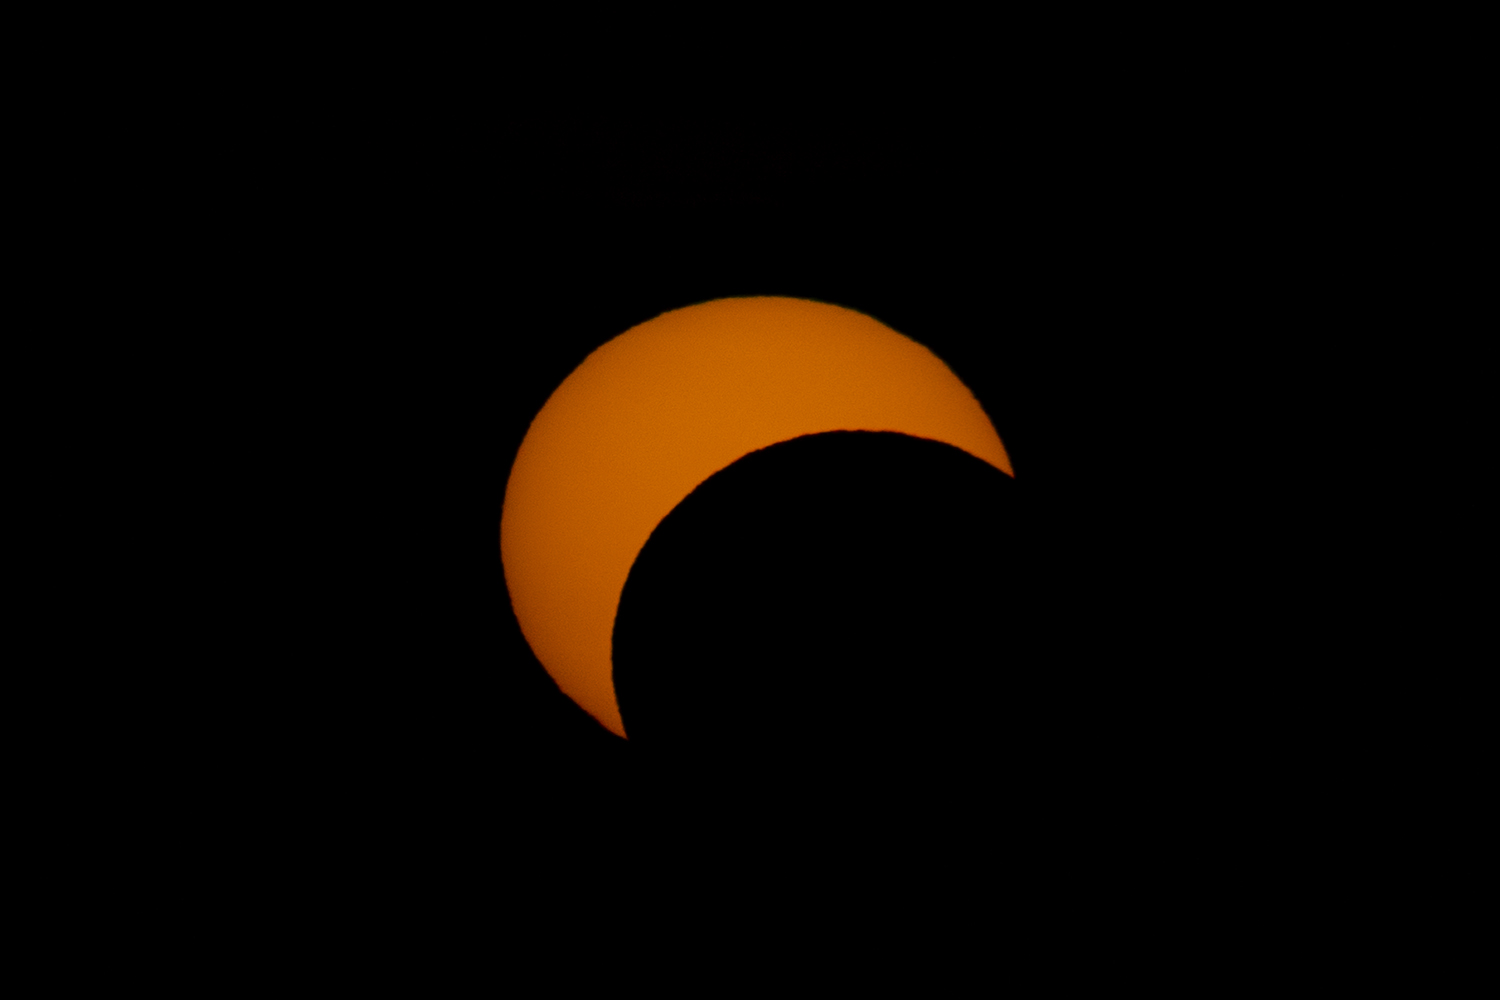 Annular solar eclipse 26 Dec. 2019.